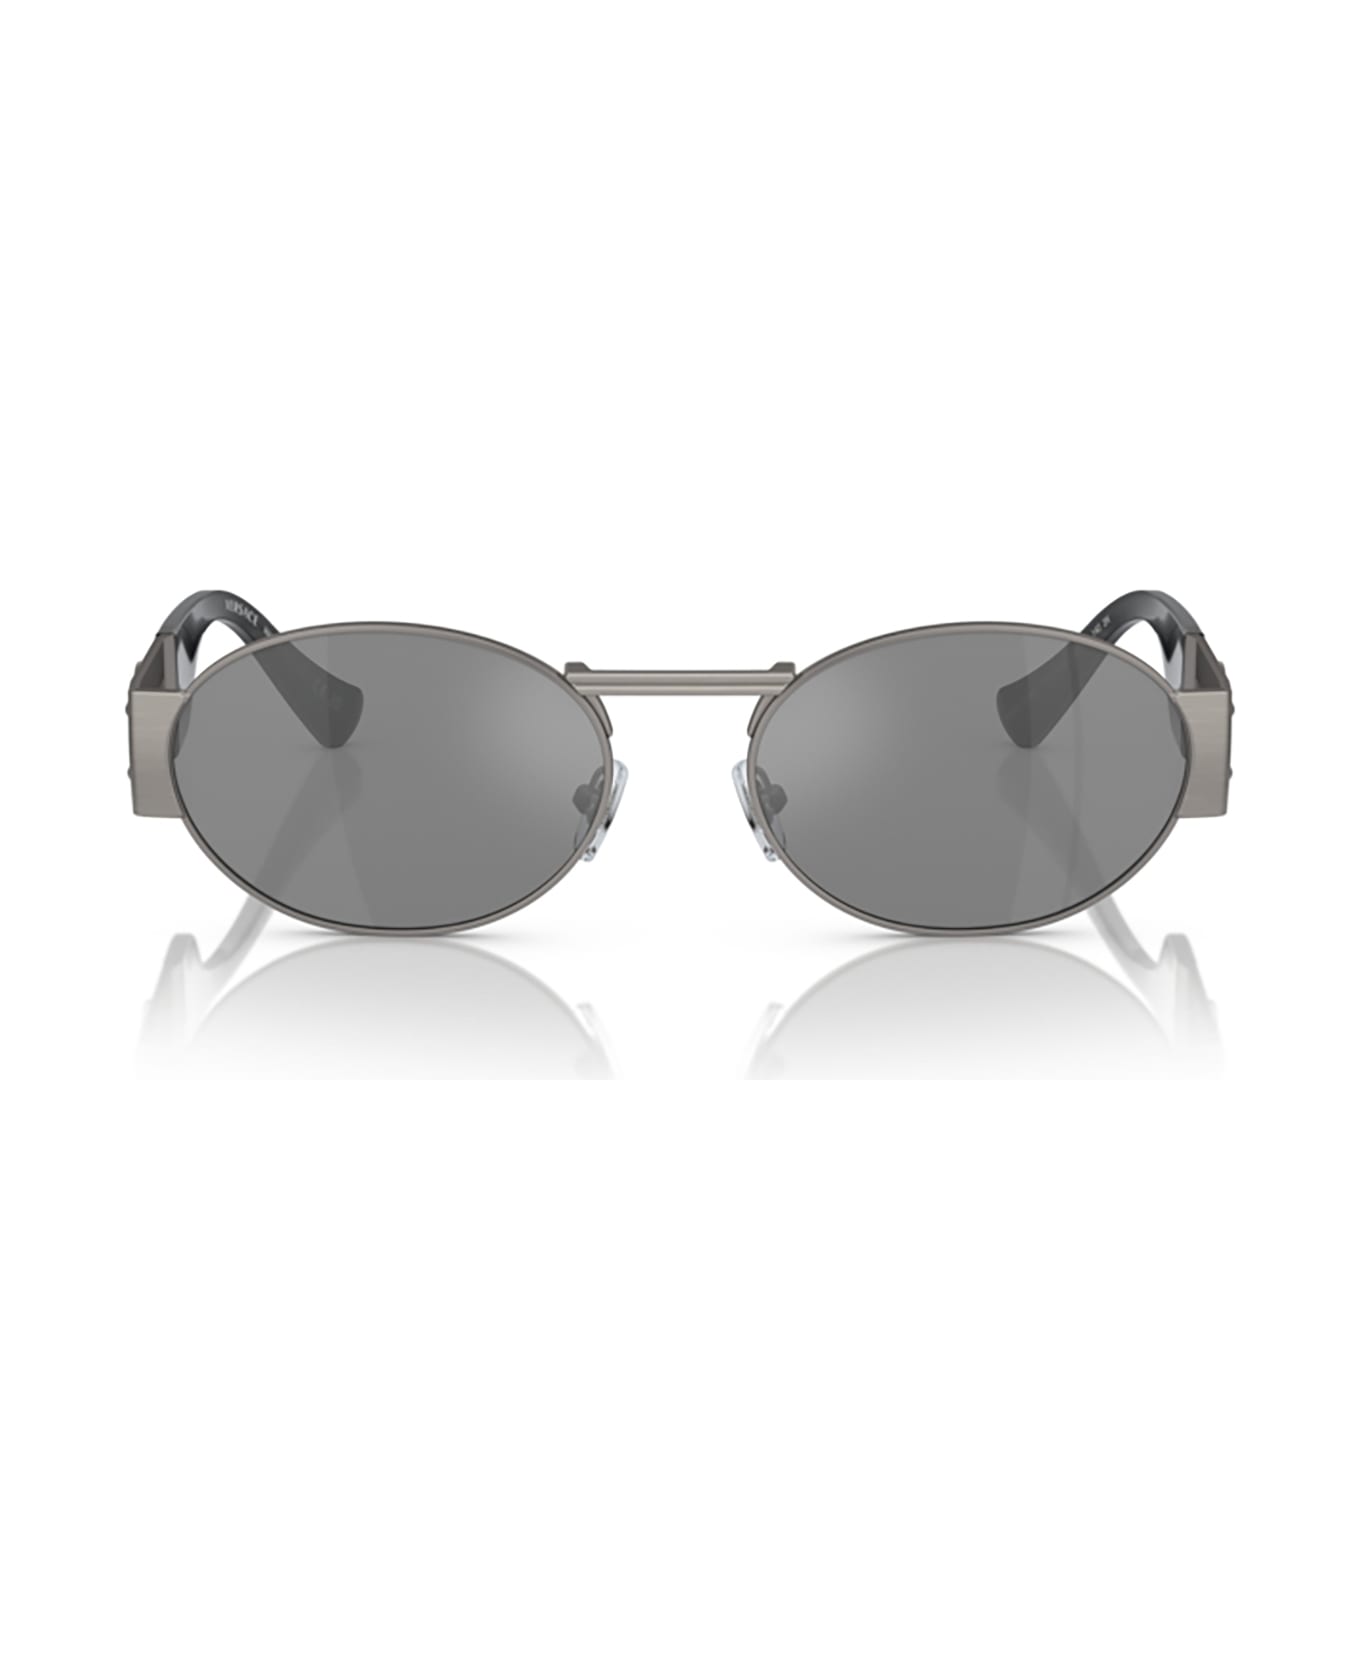 Versace Eyewear Ve2264 Matte Gunmetal Sunglasses - Matte gunmetal